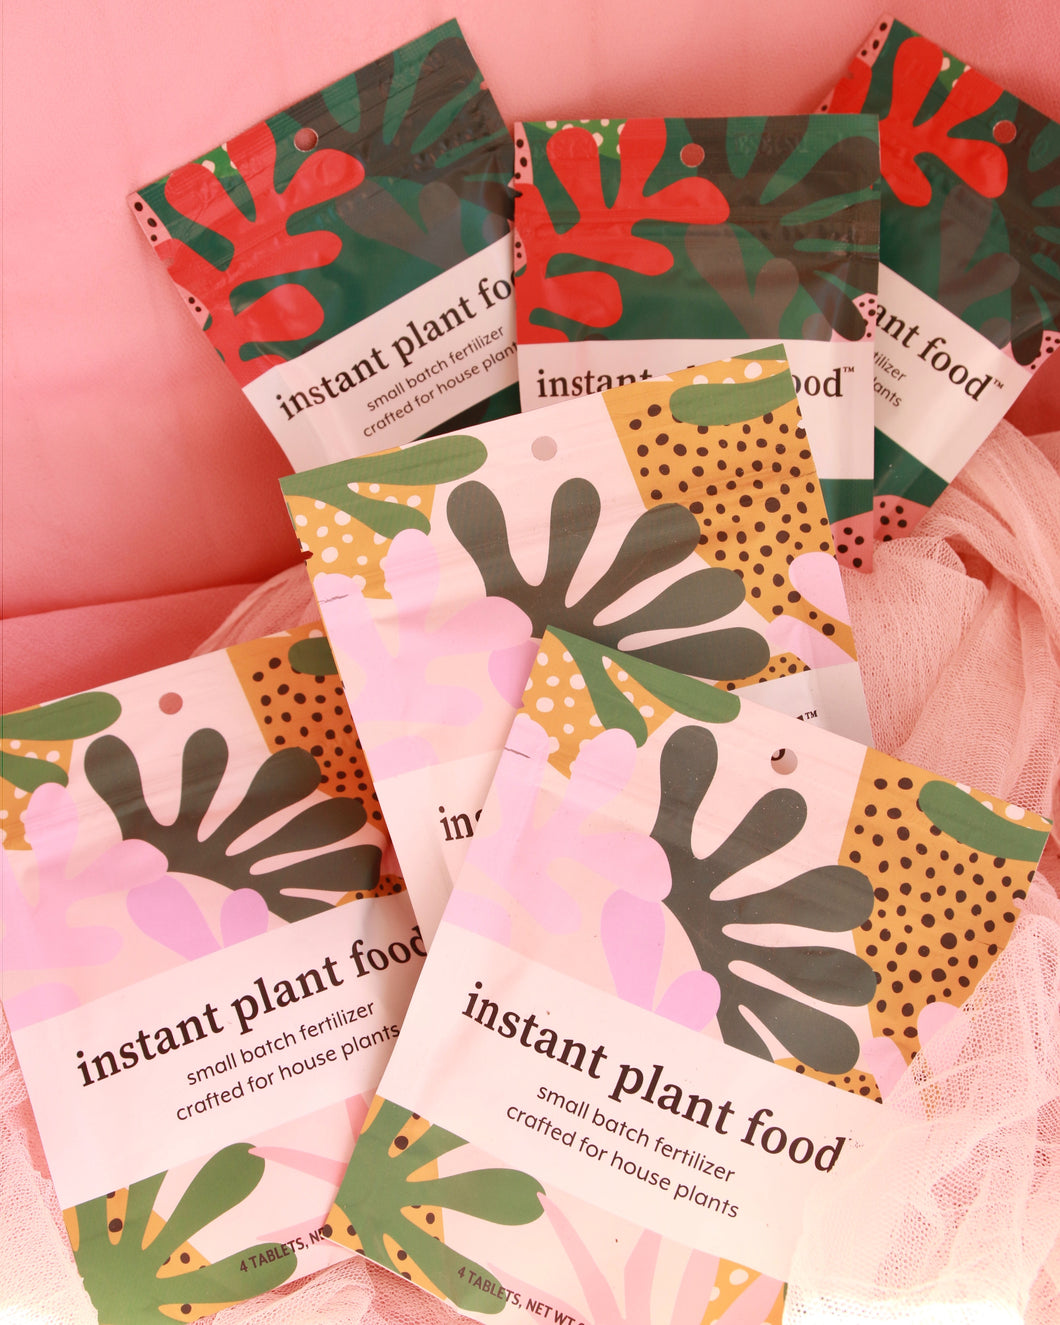 Instant Plant Food | Houseplant Fertilizer